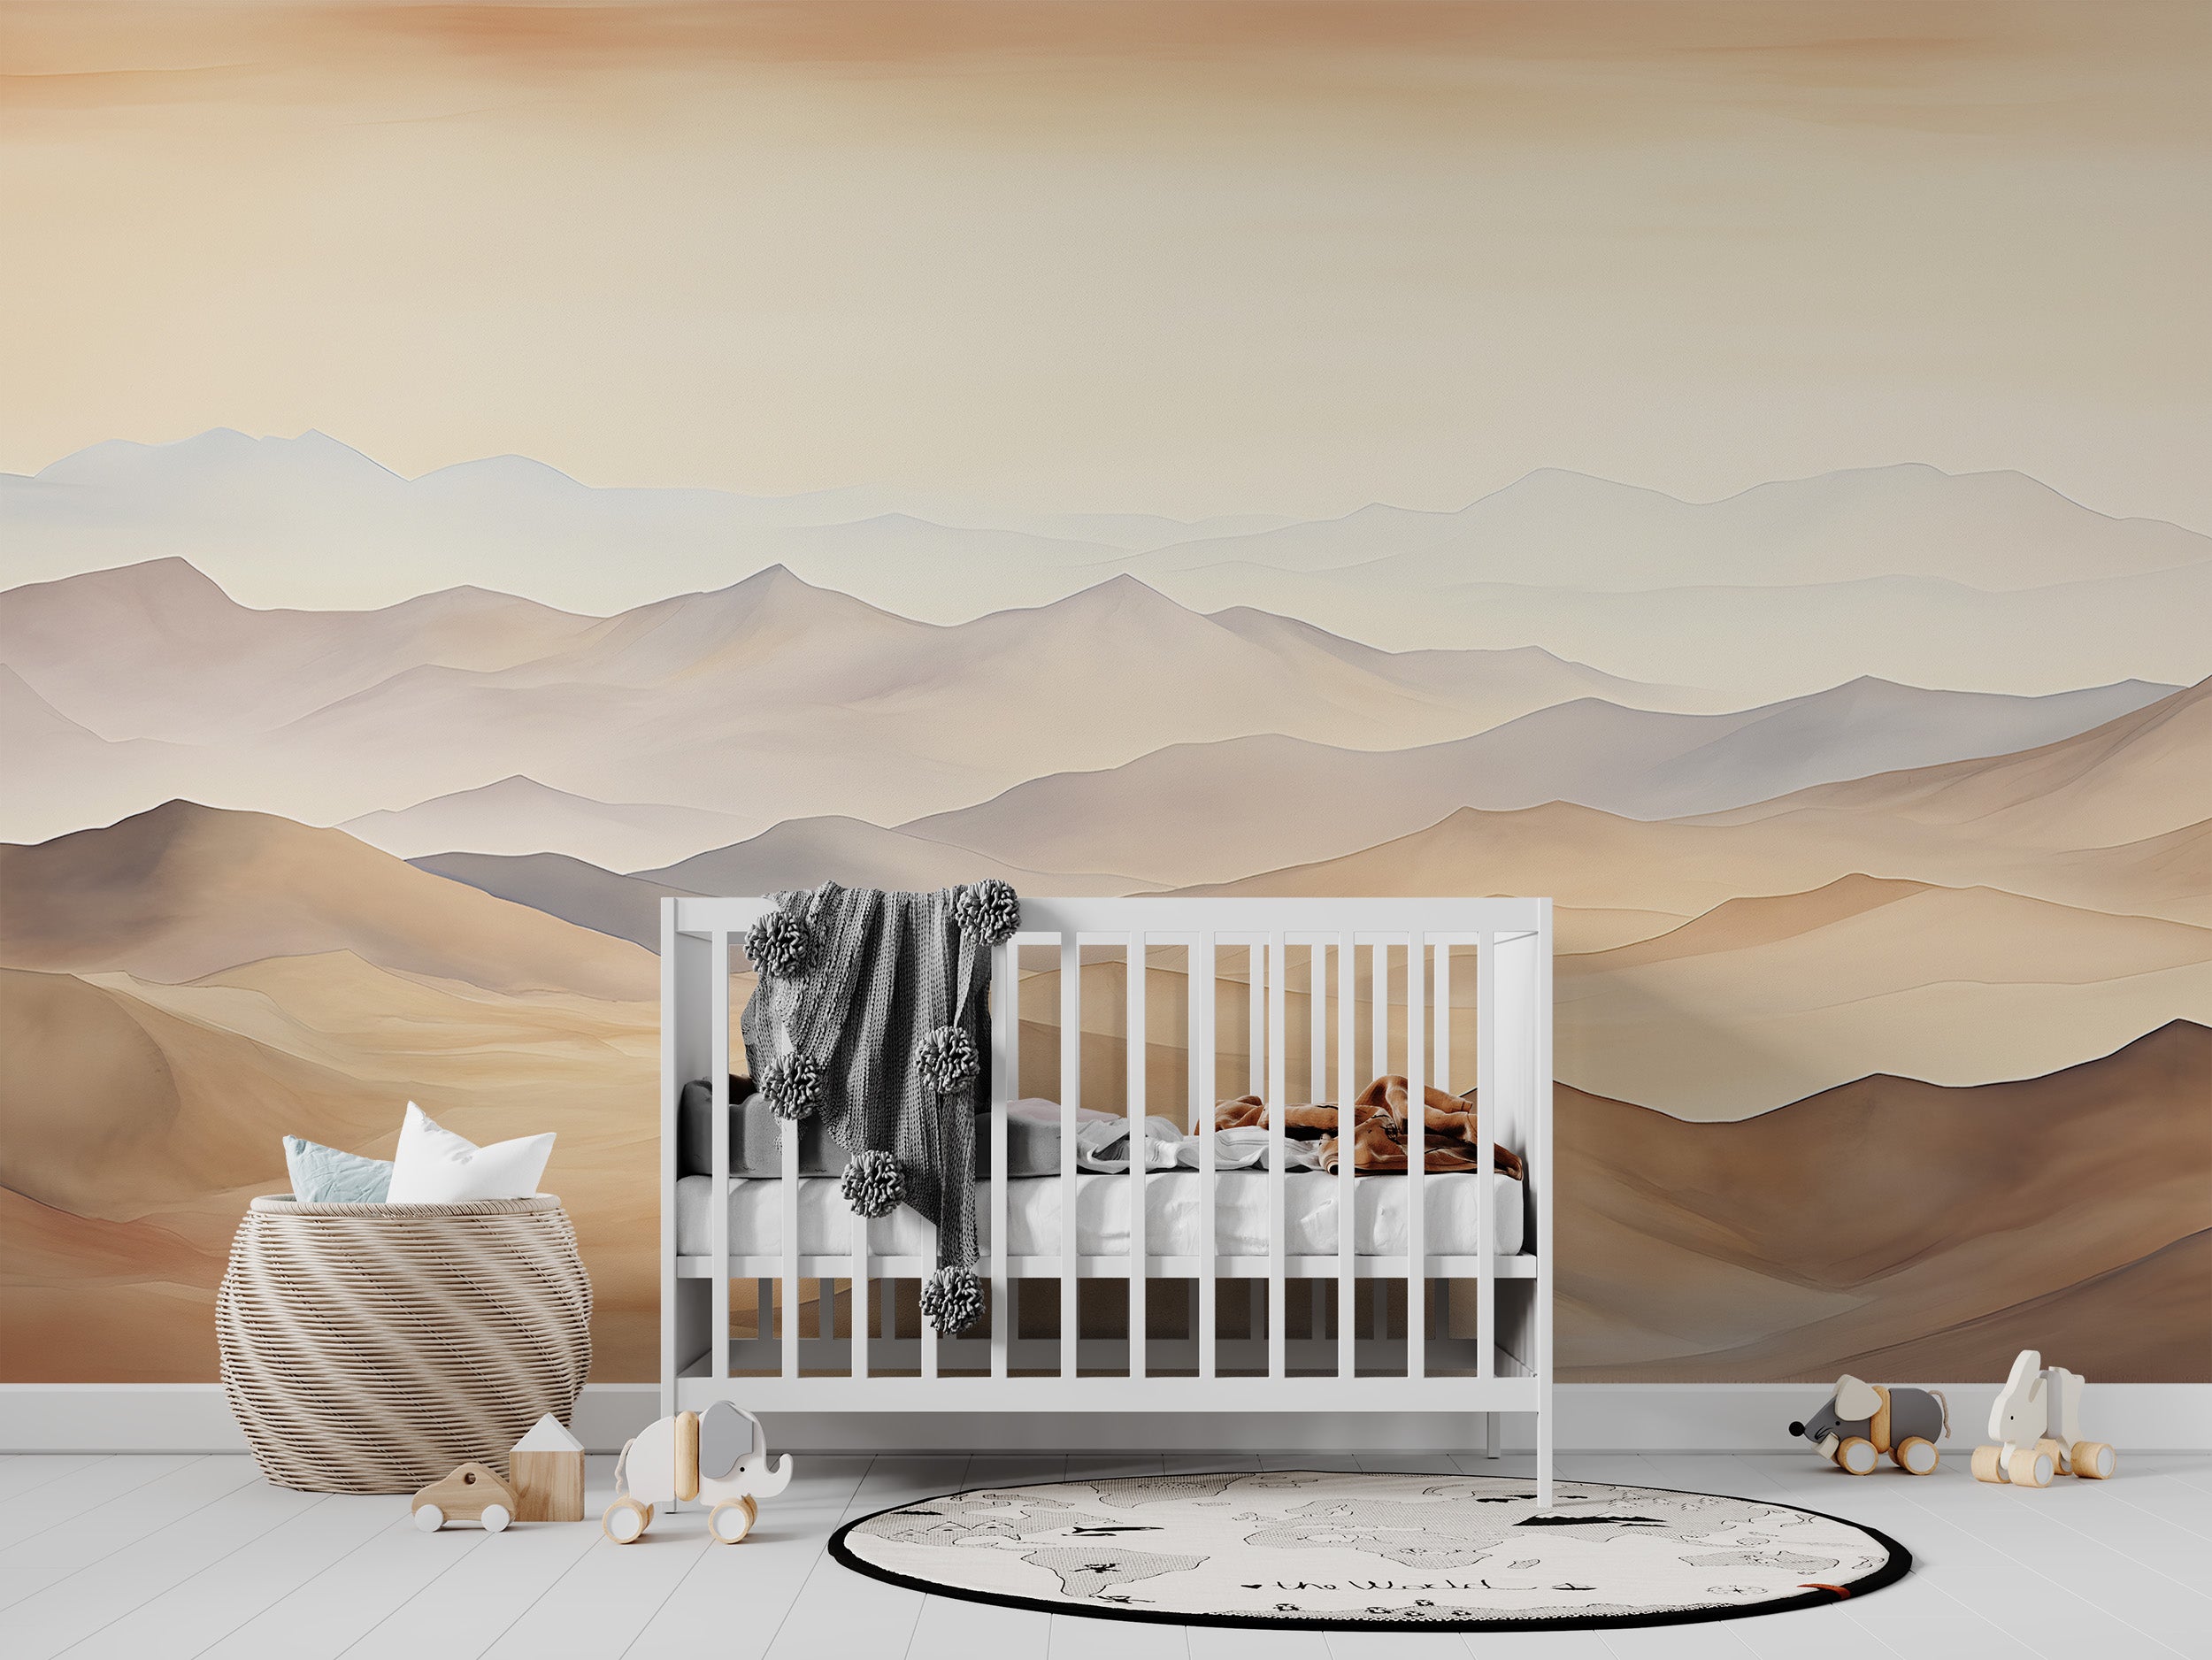 Tranquil Sand Dunes Wallpaper for Desert-Themed Decor